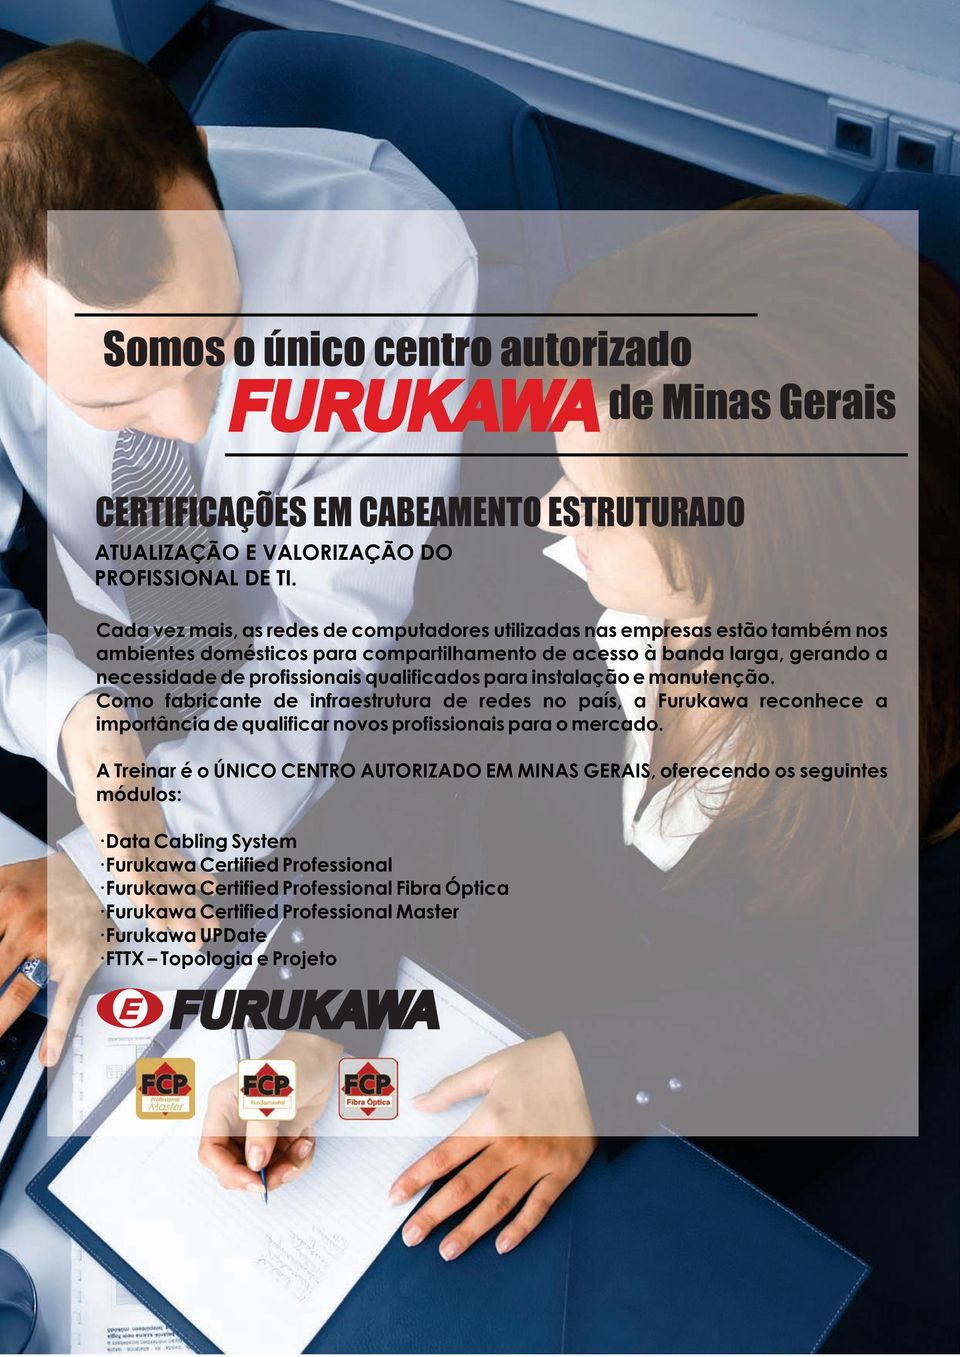 qualificados para instalação e manutenção. Como fabricante de infraestrutura de redes no país, a Furukawa reconhece a importância de qualificar novos profissionais para o mercado.